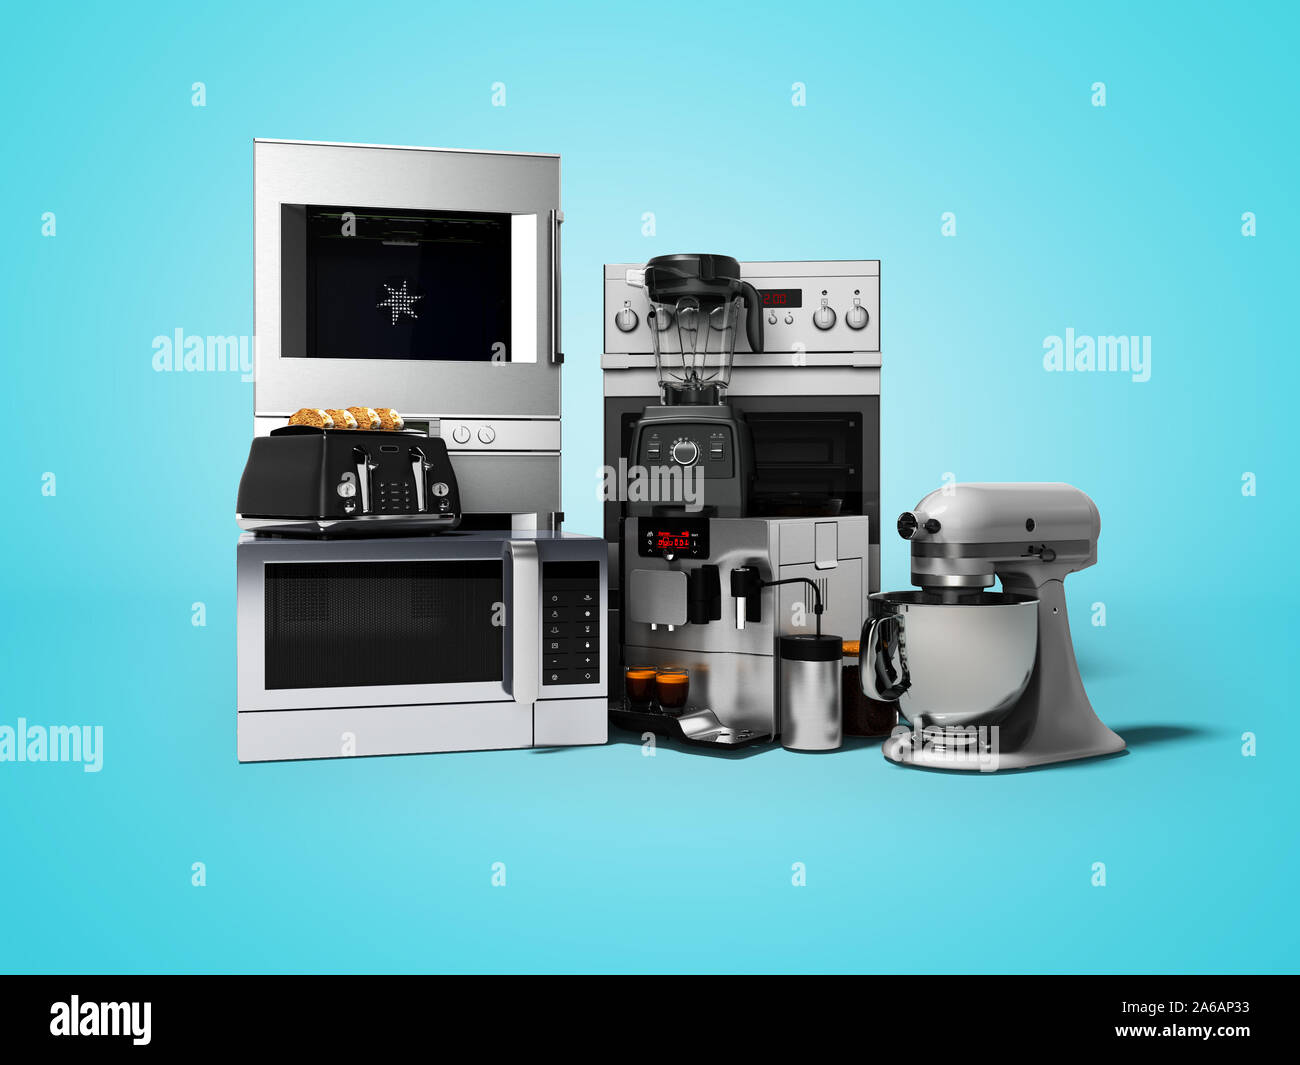 Grupo de electrodomésticos de cocina, tostadora, cafetera, microondas  procesador de alimentos Blender 3D Render sobre fondo azul con sombra  Fotografía de stock - Alamy